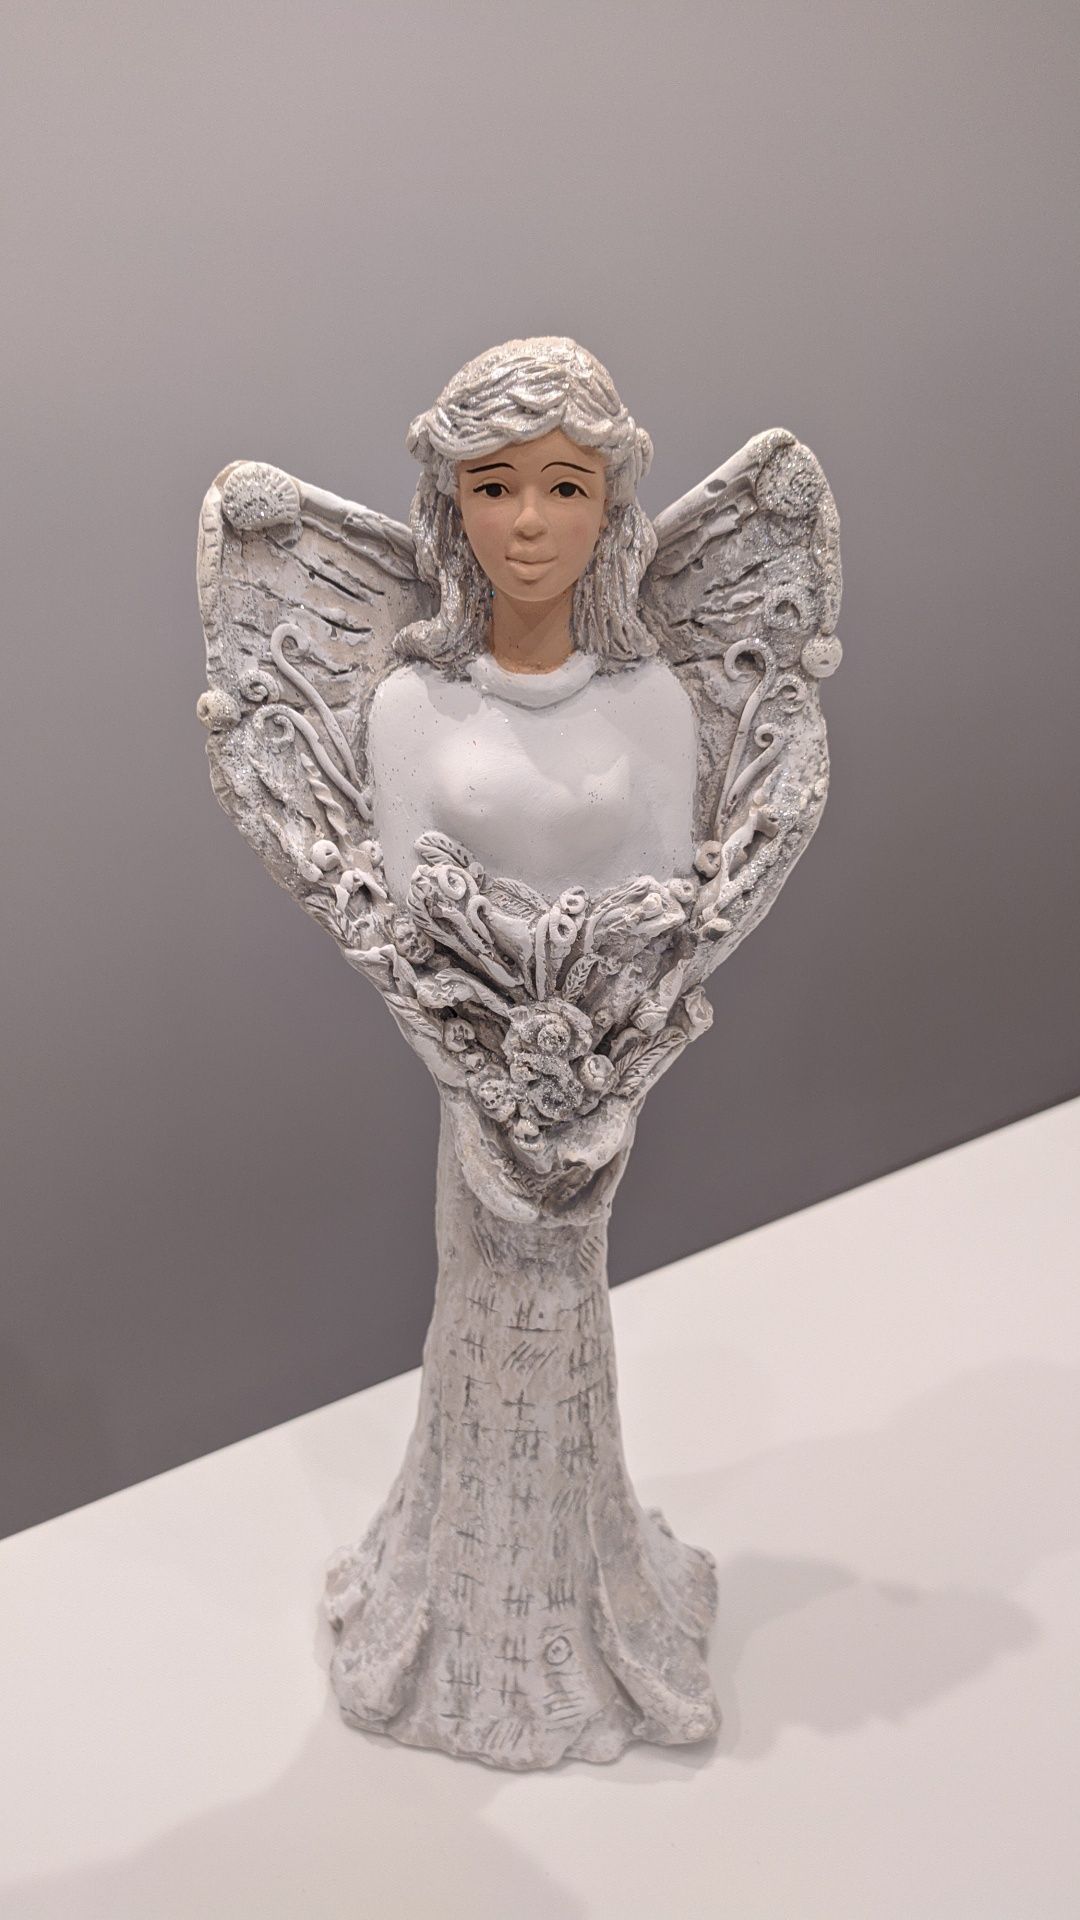 Handmade anioł figurka nowa